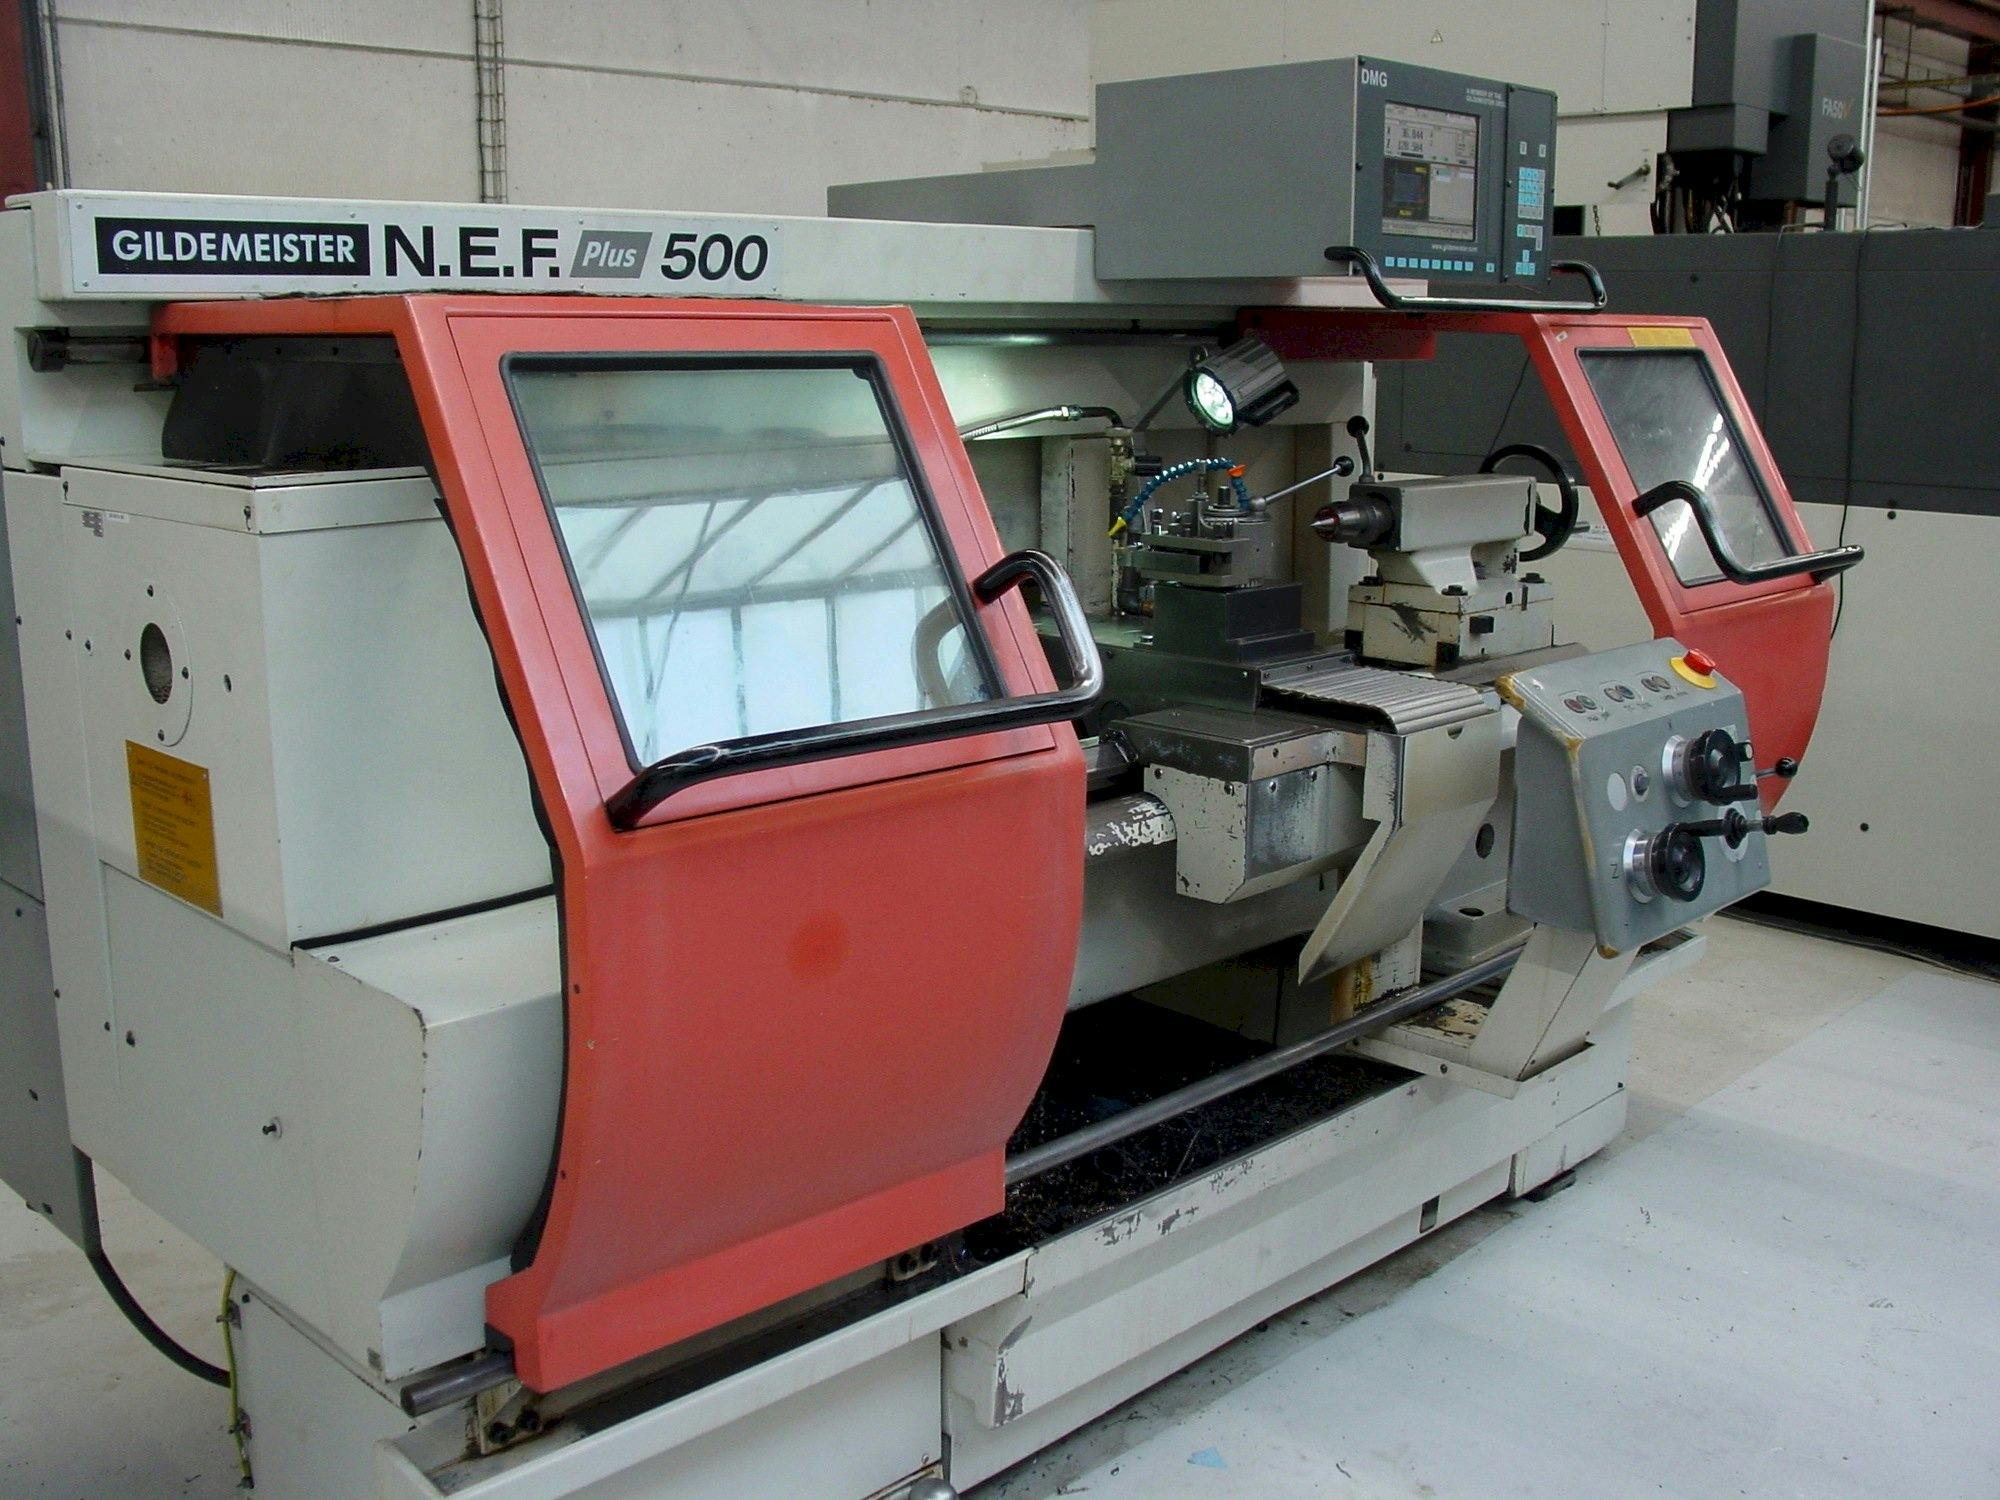 Čelní pohled  na Gildemeister NEF Plus 500  stroj